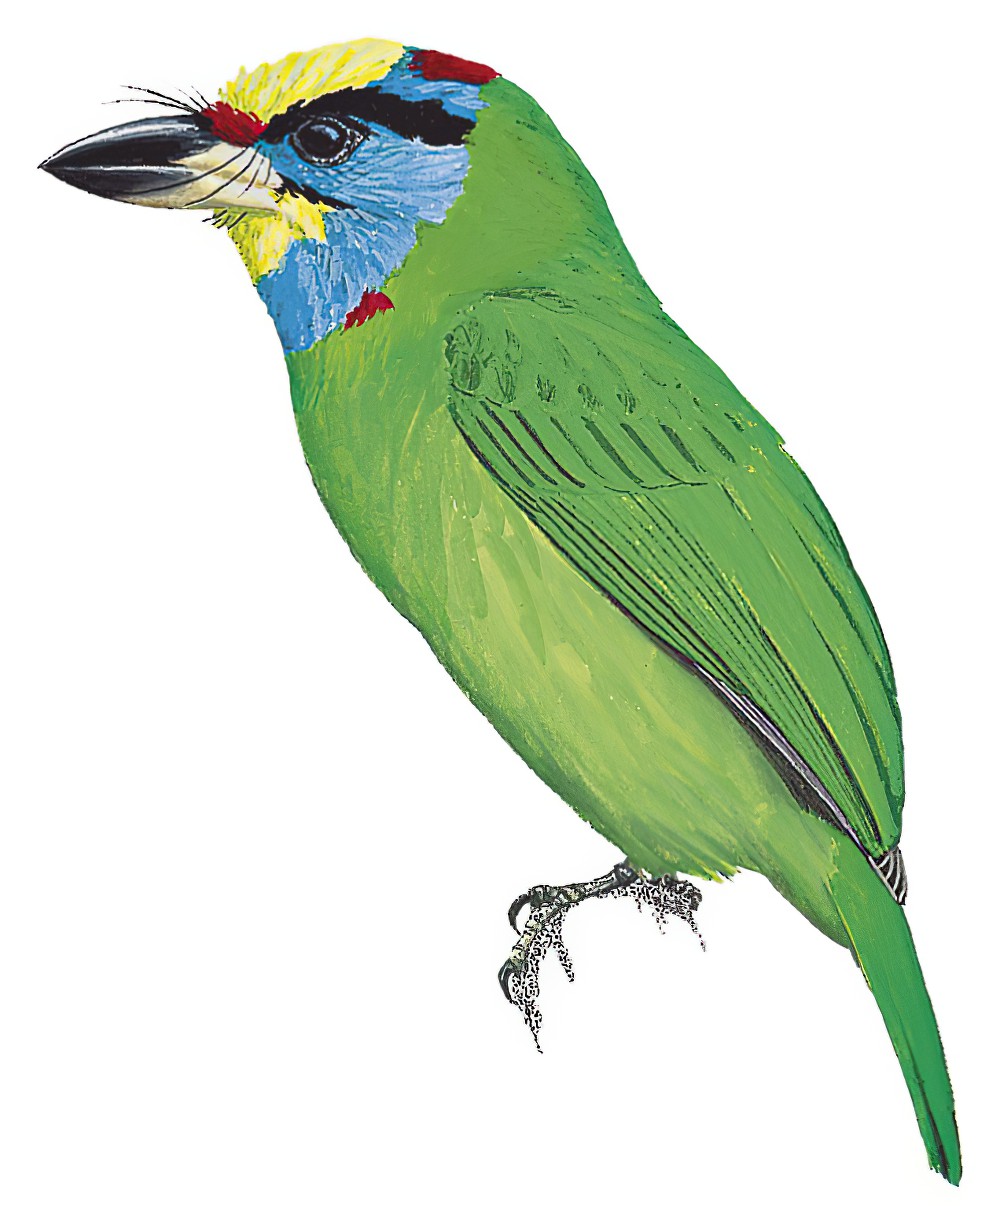 印支拟啄木鸟 / Indochinese Barbet / Psilopogon annamensis